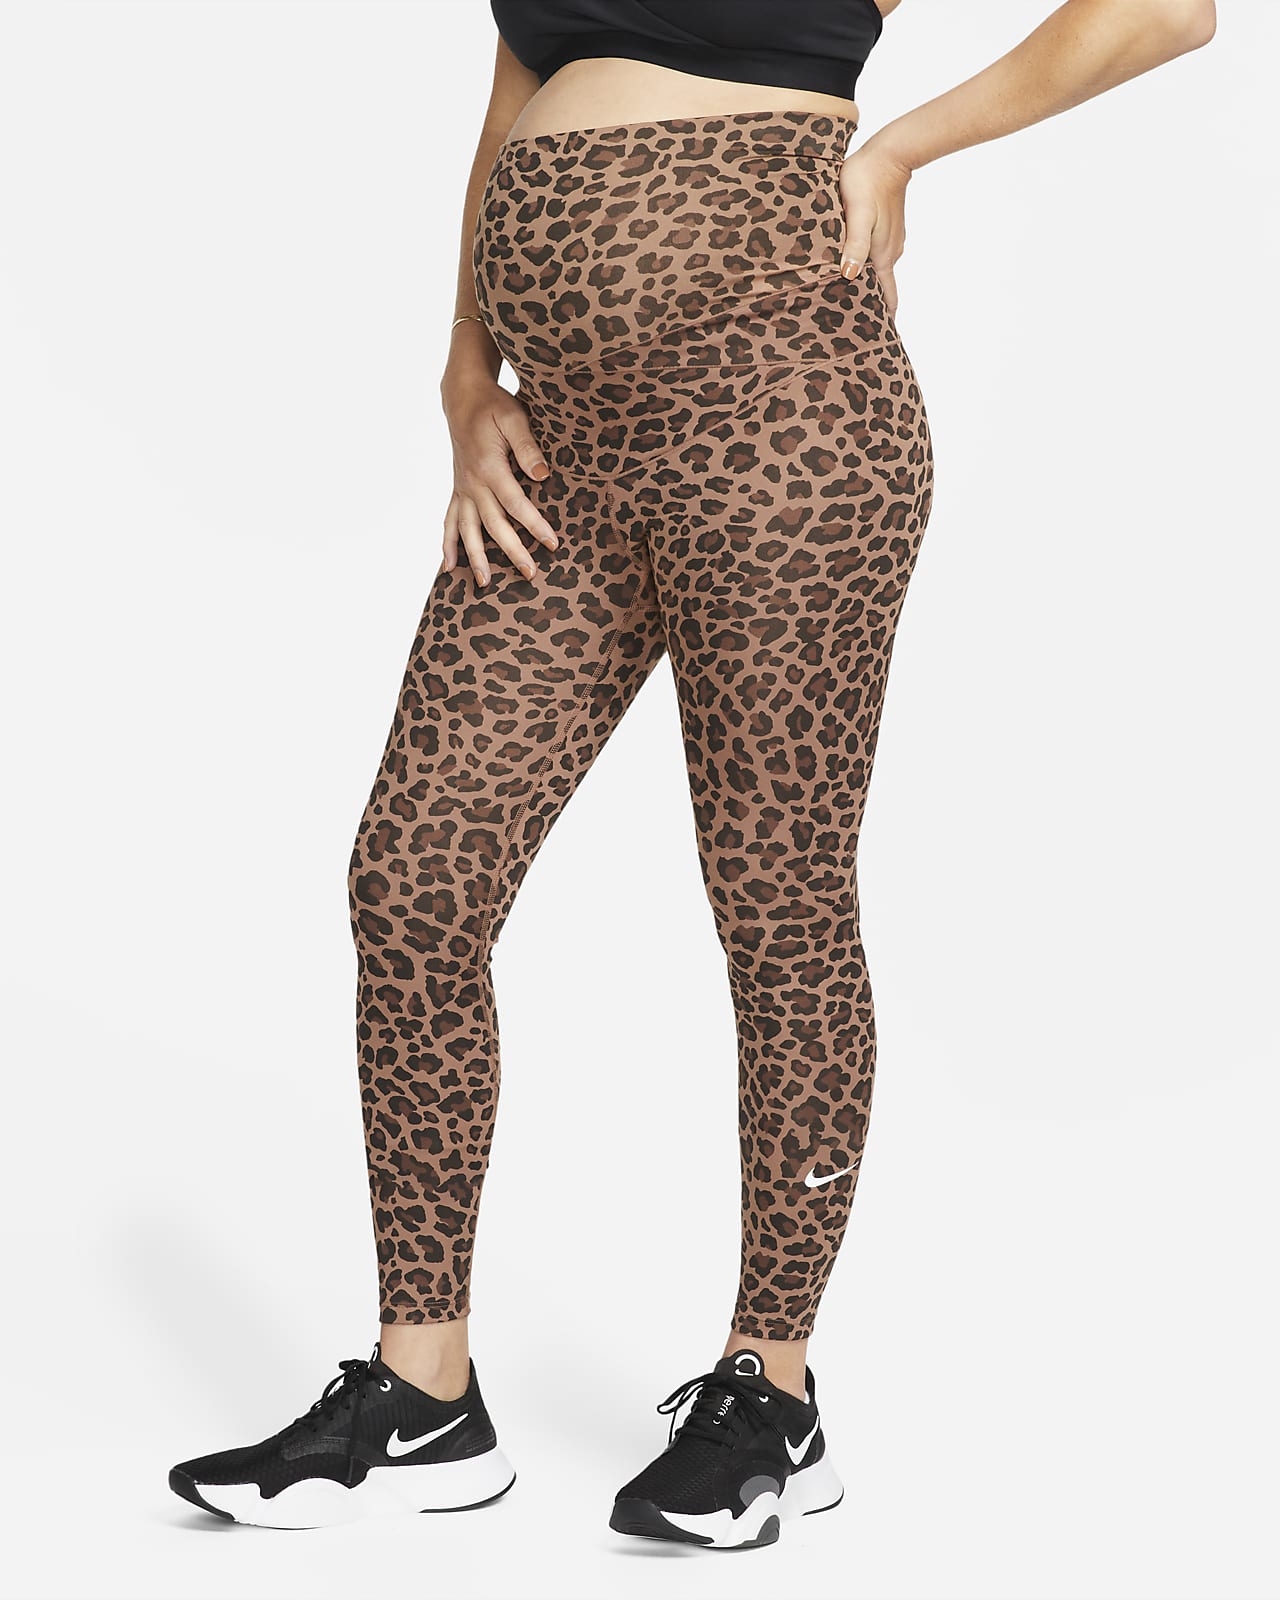 Nike One (M) Women's High-Waisted Leopard Print Leggings (Maternity). Nike  LU